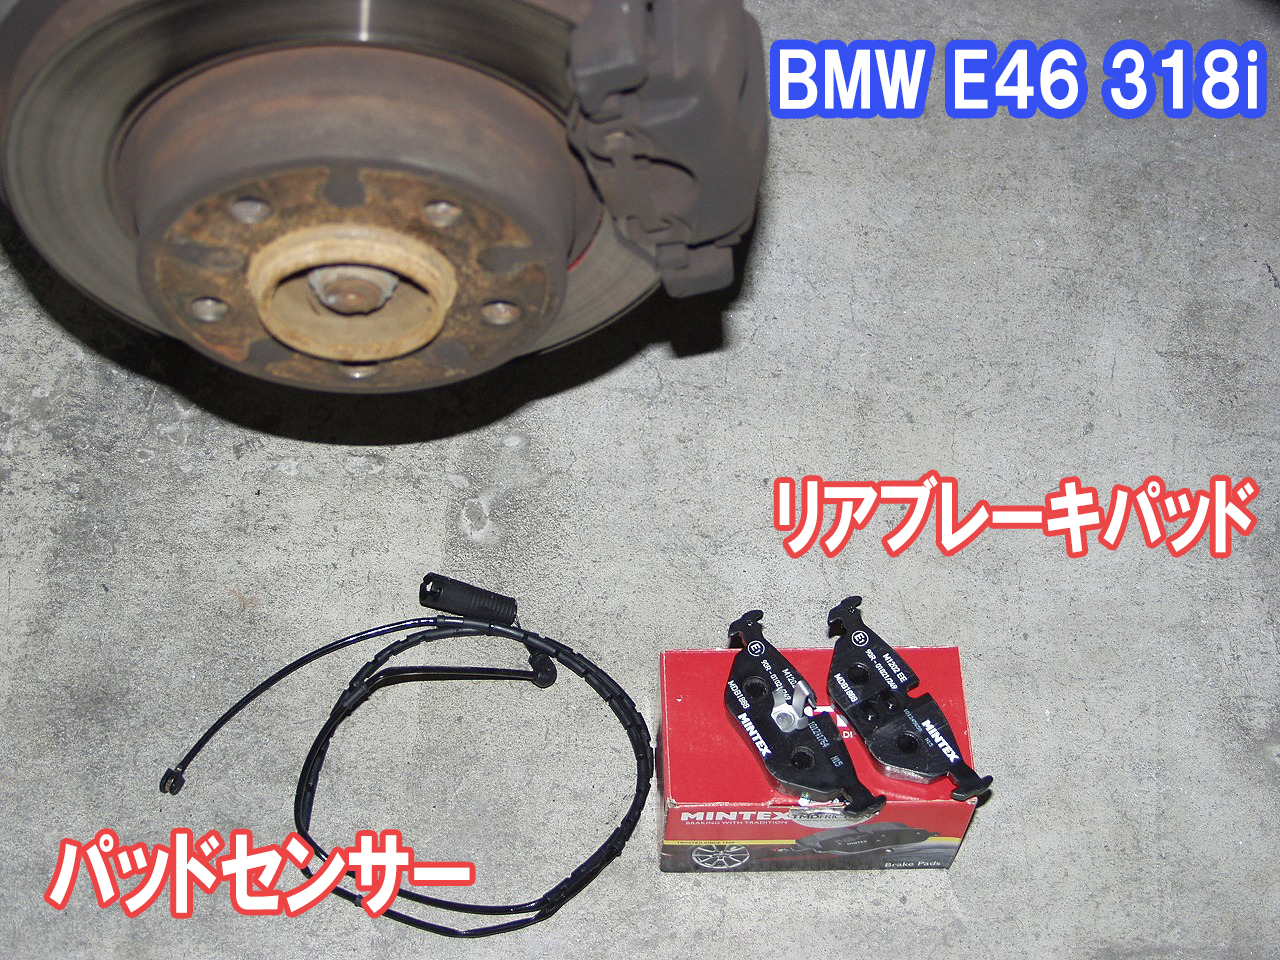 BMW E46 318i 修理・メンテナンス】ABS,DSC,ブレーキライニング警告灯 